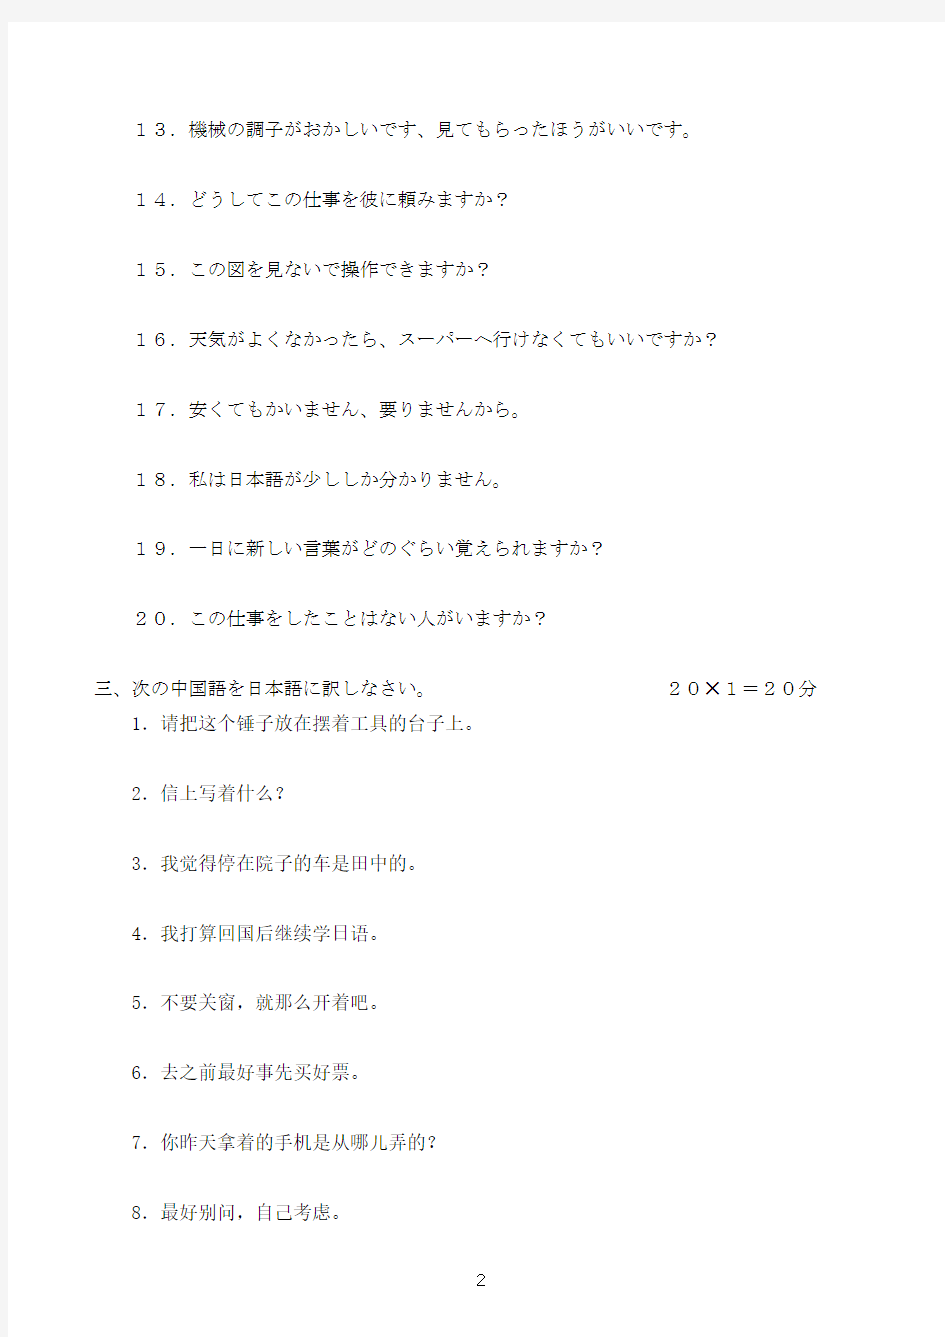 新日语基础教程1考试题